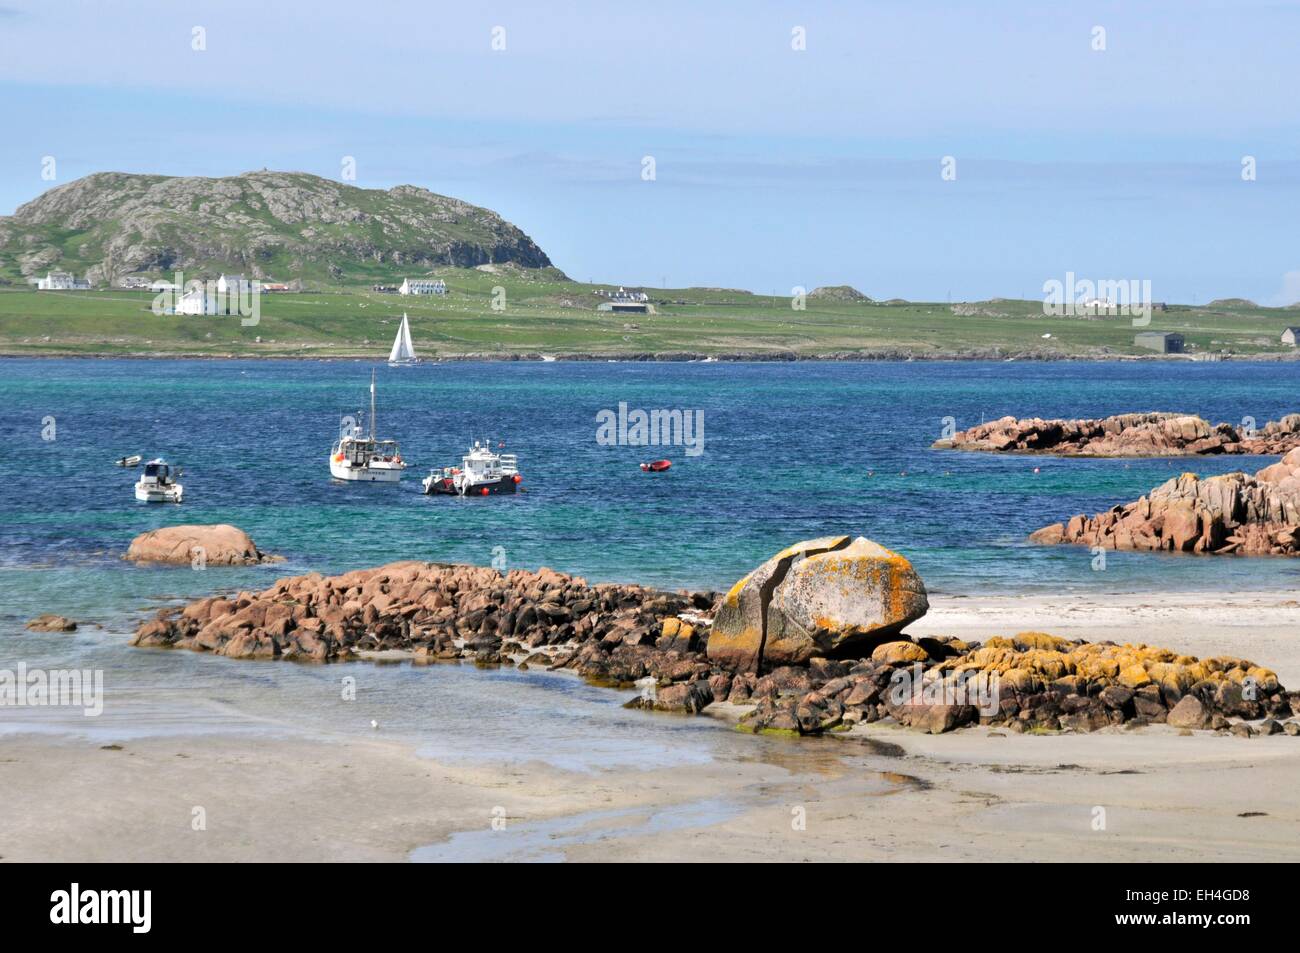 Großbritannien, Schottland, Isle of Mull, Fionnphort äußersten Südwesten der Insel Mull, die Ross of Mull, Knockvologan Strand, Iona Insel im Hintergrund Stockfoto